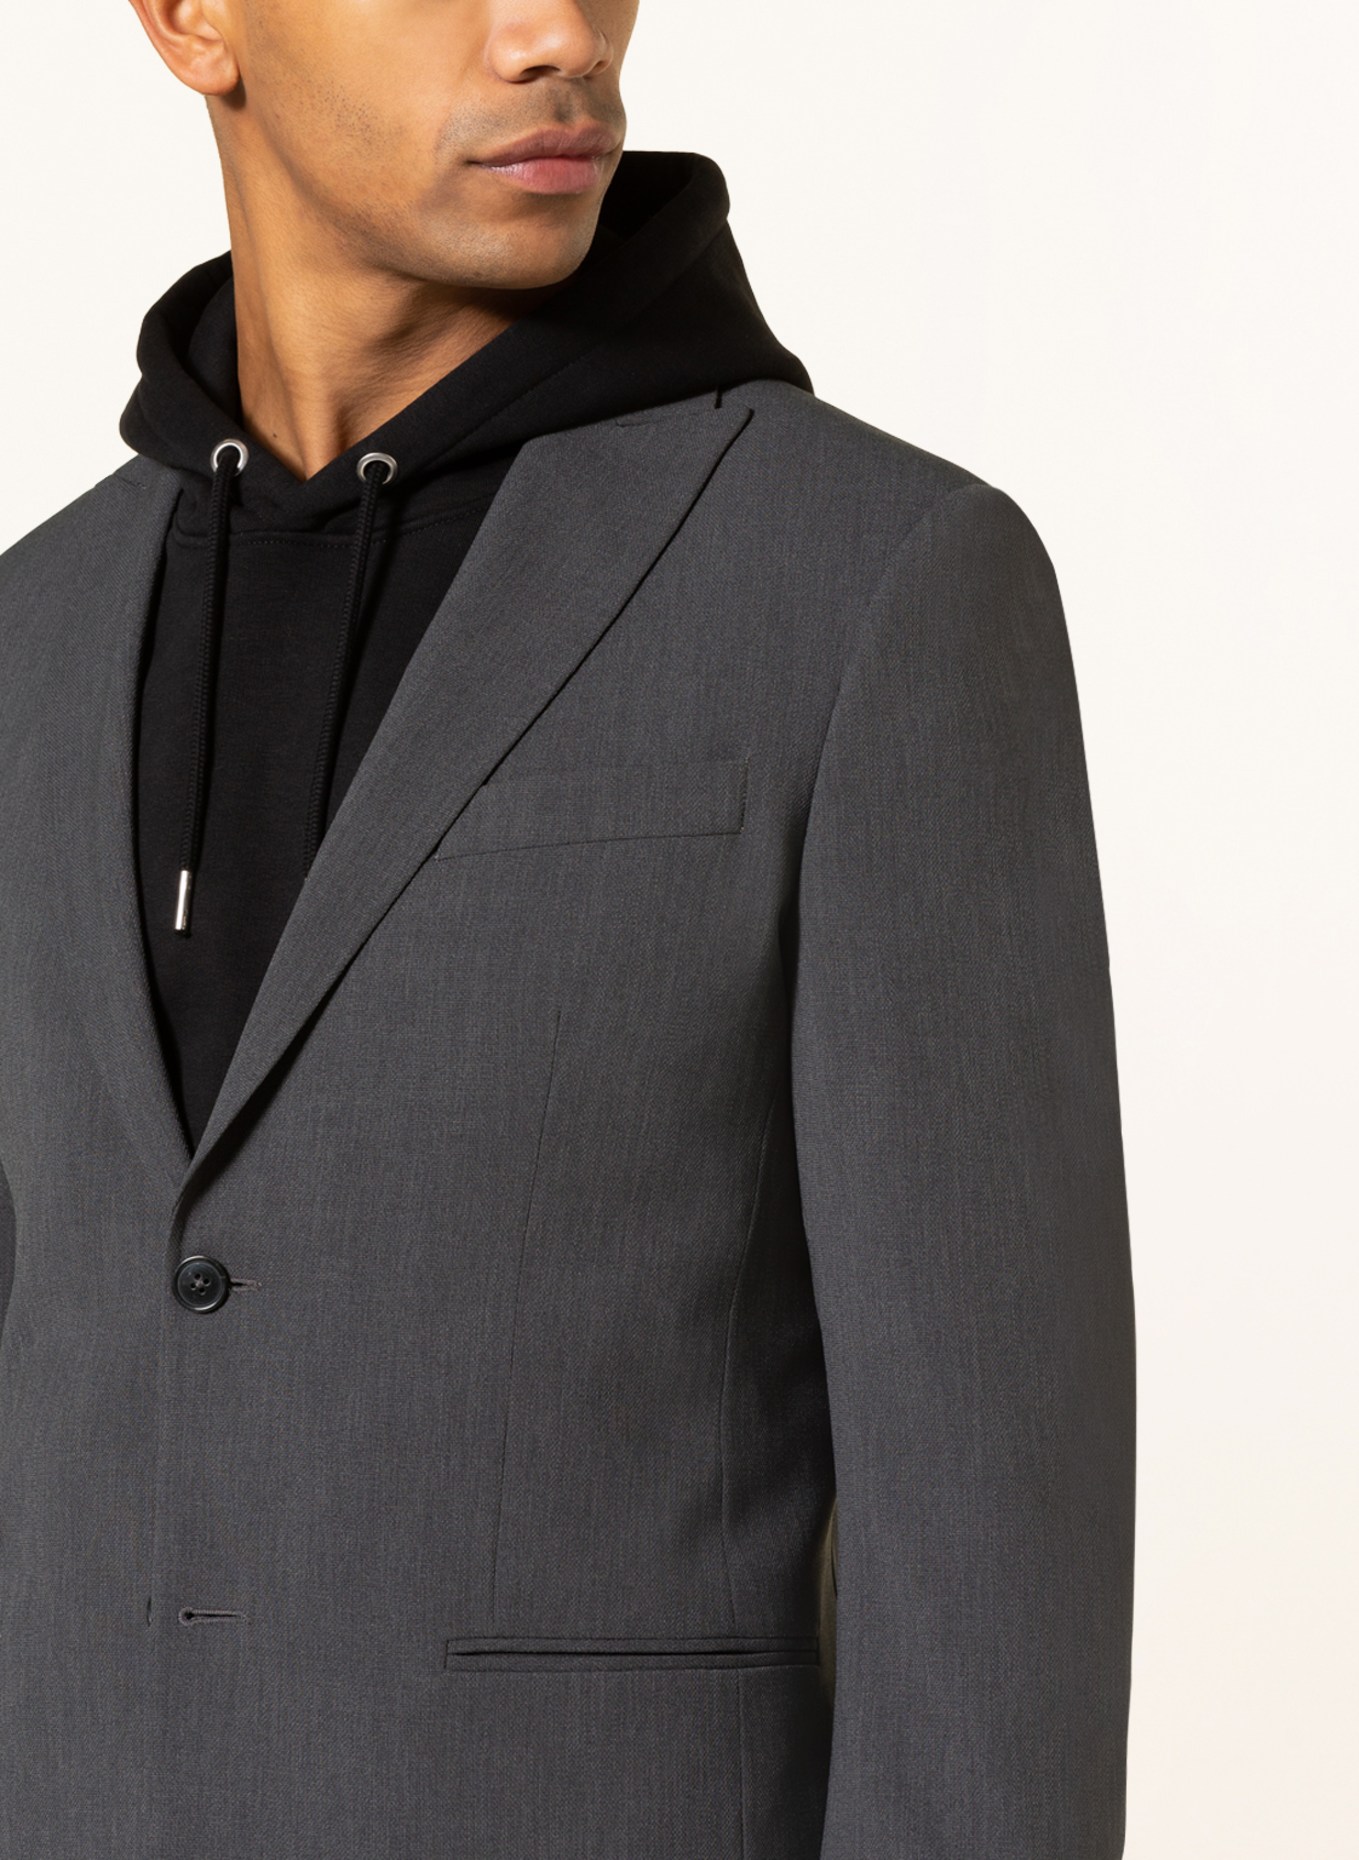 SPSR Suit jacket extra slim fit , Color: DARK GRAY (Image 5)